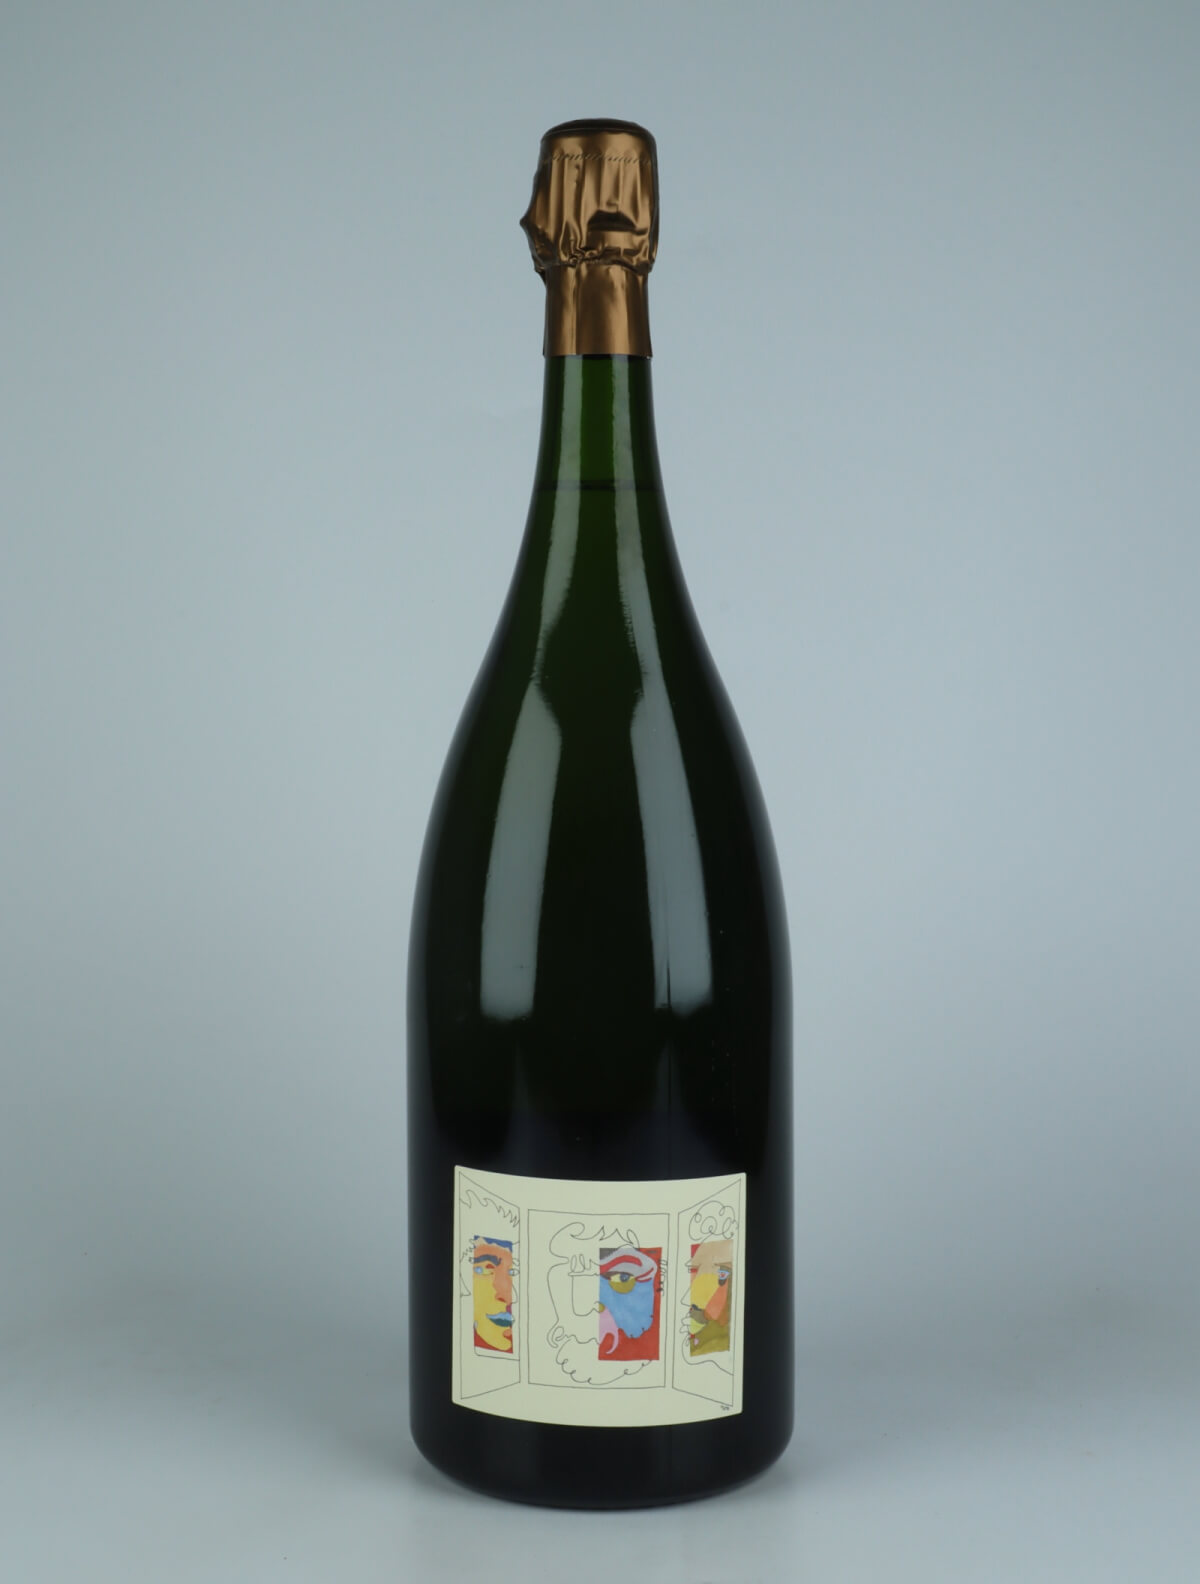 En flaske N.V. Triptyque (07/14/15) - Brut Nature - Magnum Mousserende fra Stroebel, Champagne i Frankrig